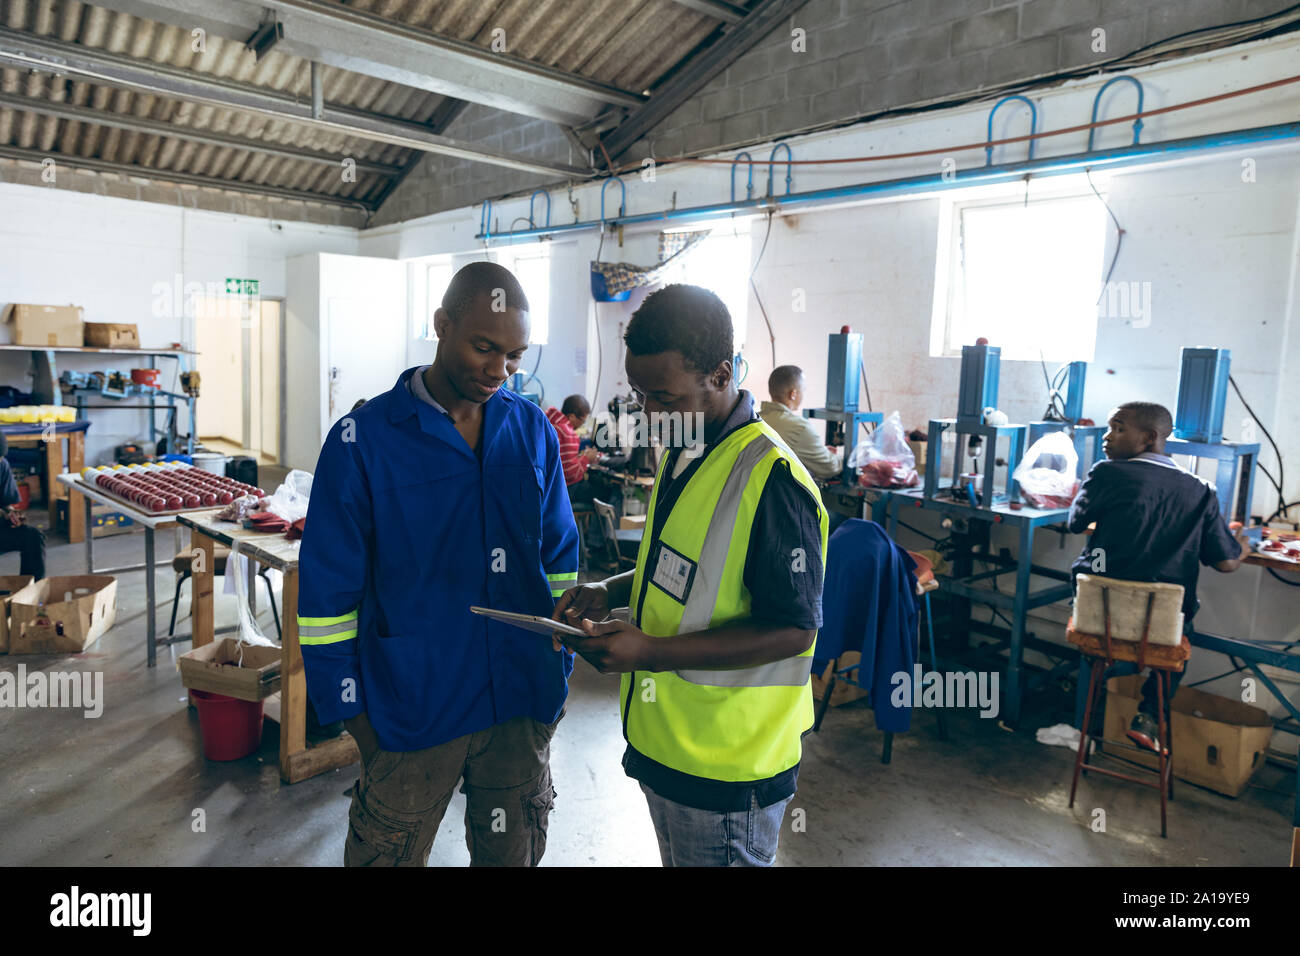 Les jeunes hommes et de travail en utilisant le comprimé dans une usine d'équipement de sport Banque D'Images